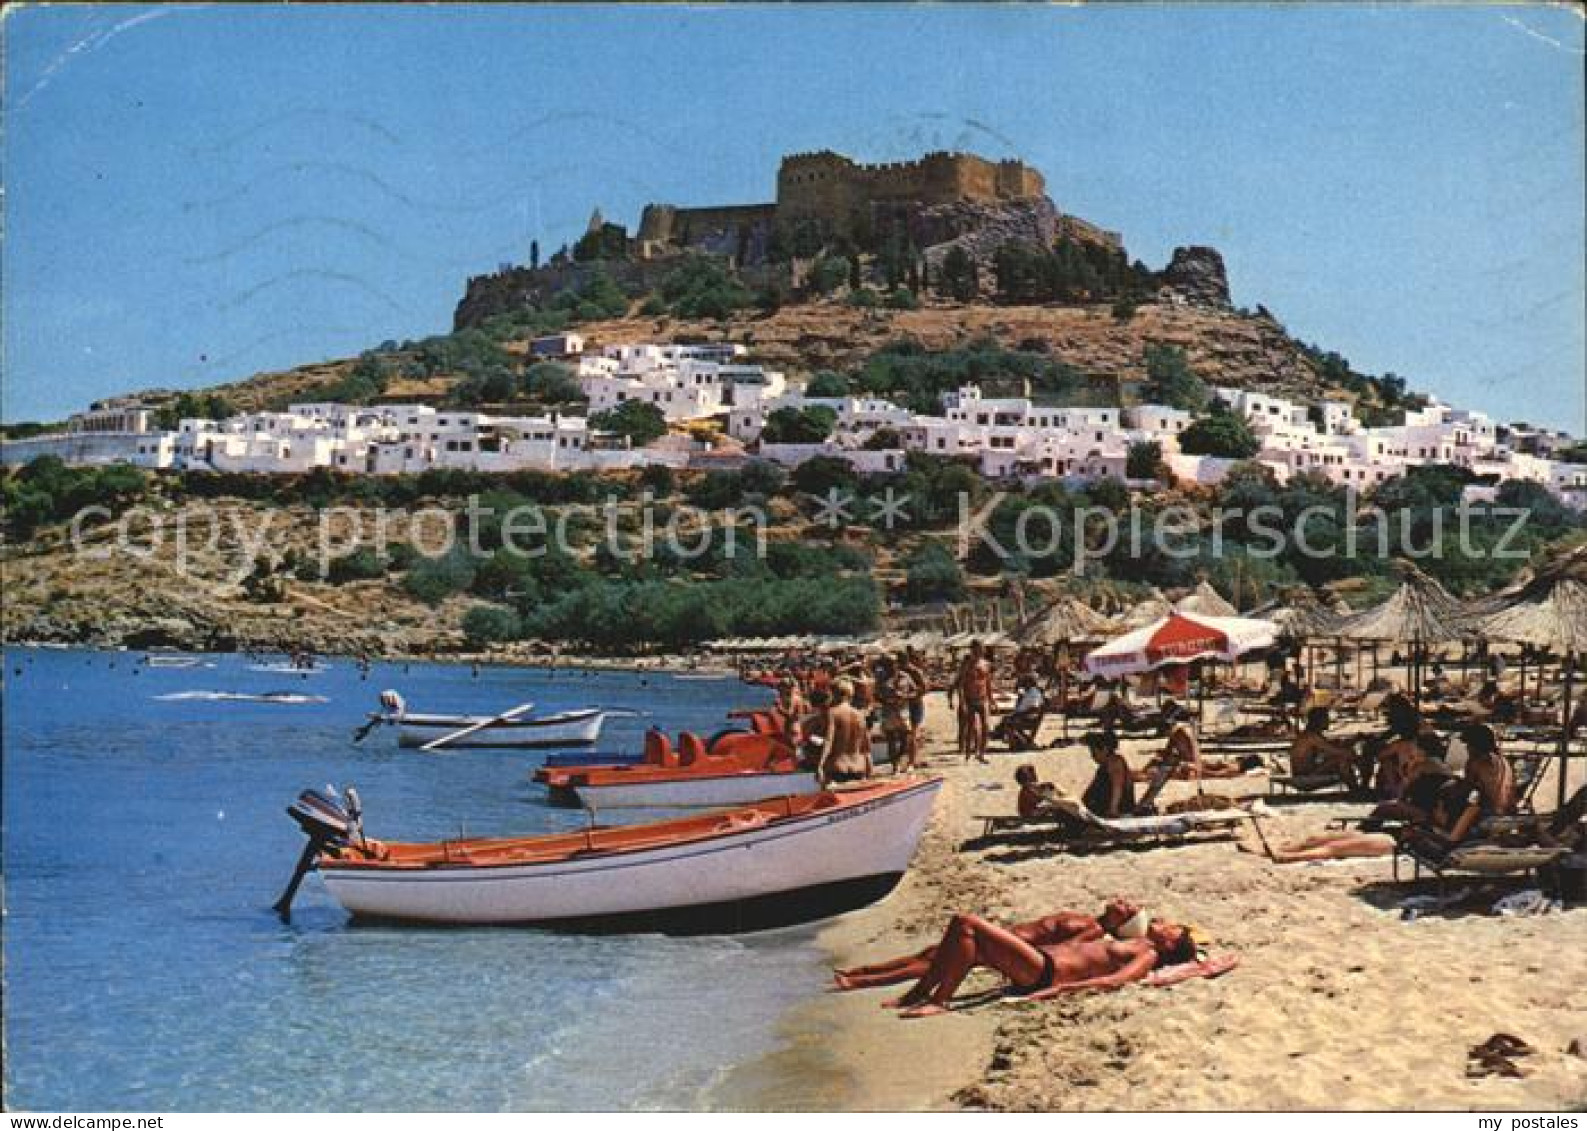 72515936 Rhodos Rhodes Aegaeis Strand Teilansicht Von Lindos  - Grèce